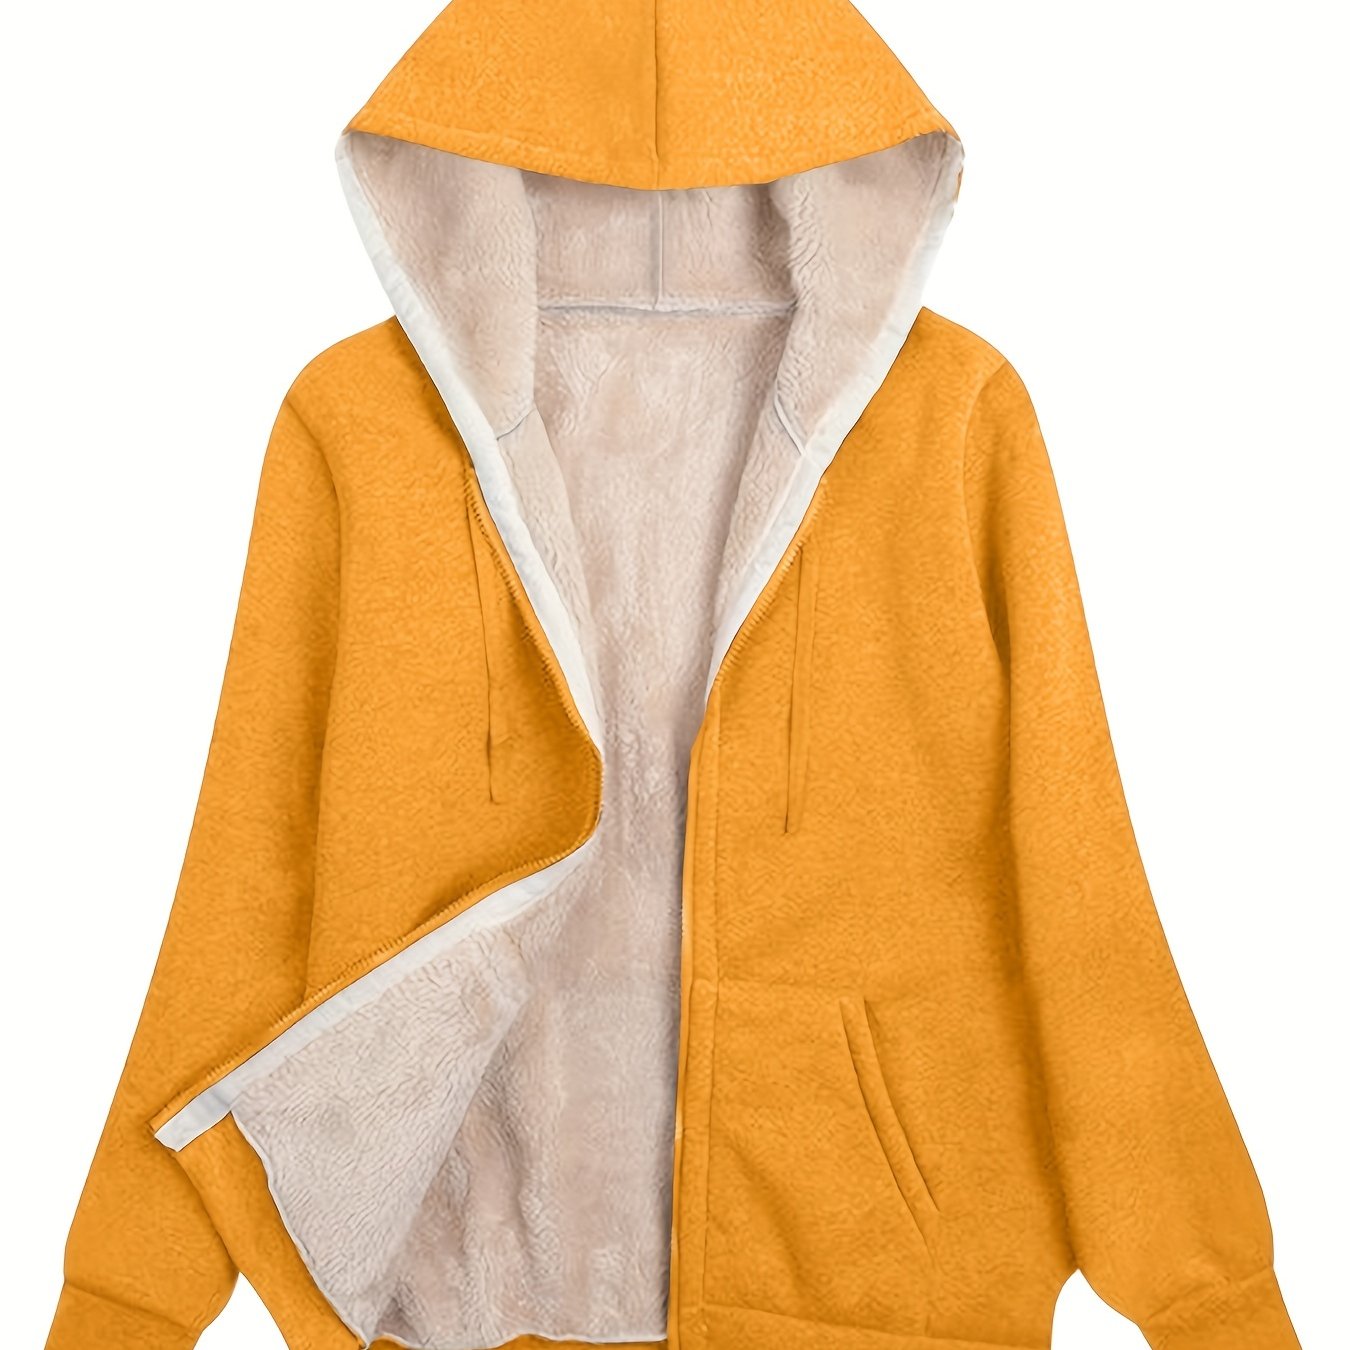  Womens Fuzzy Fleece Jacket Plus Size 1/4 Zip Up Sherpa  Pullover Long Sleeve Outwear Tie Dye Yellow M